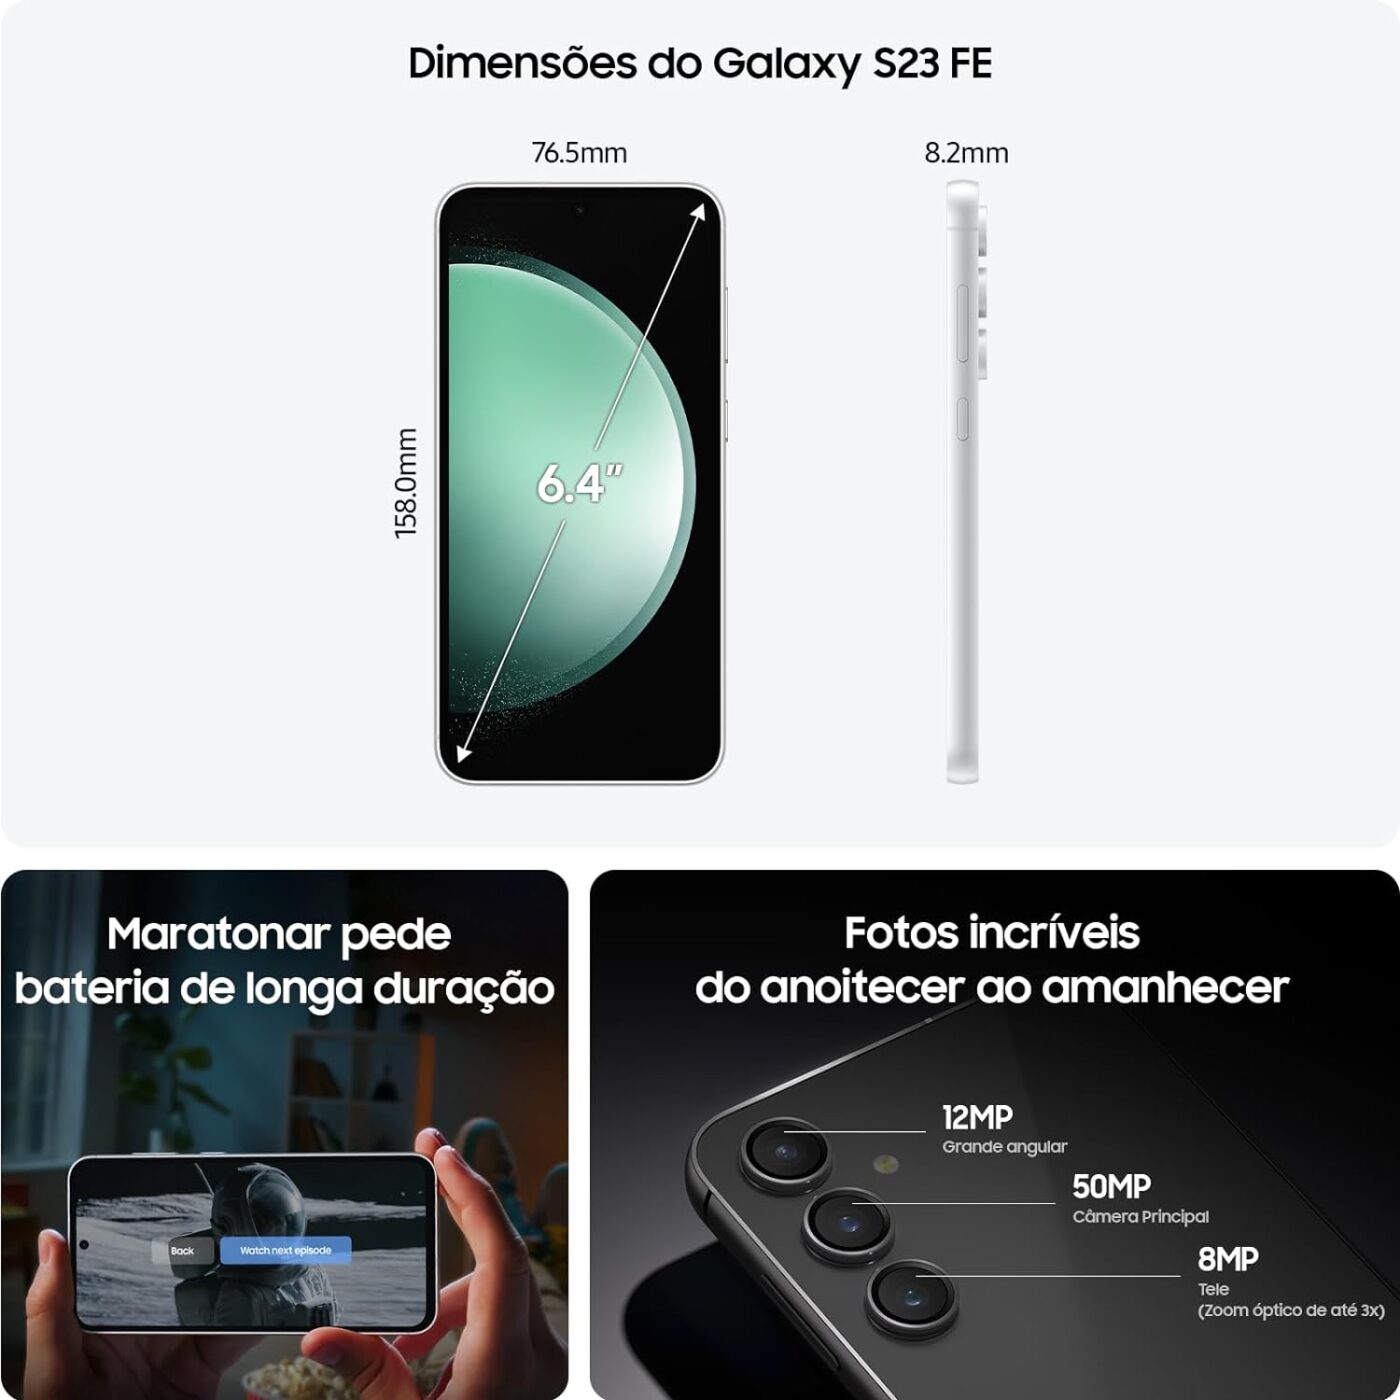 Especificações do Galaxy S23 FE